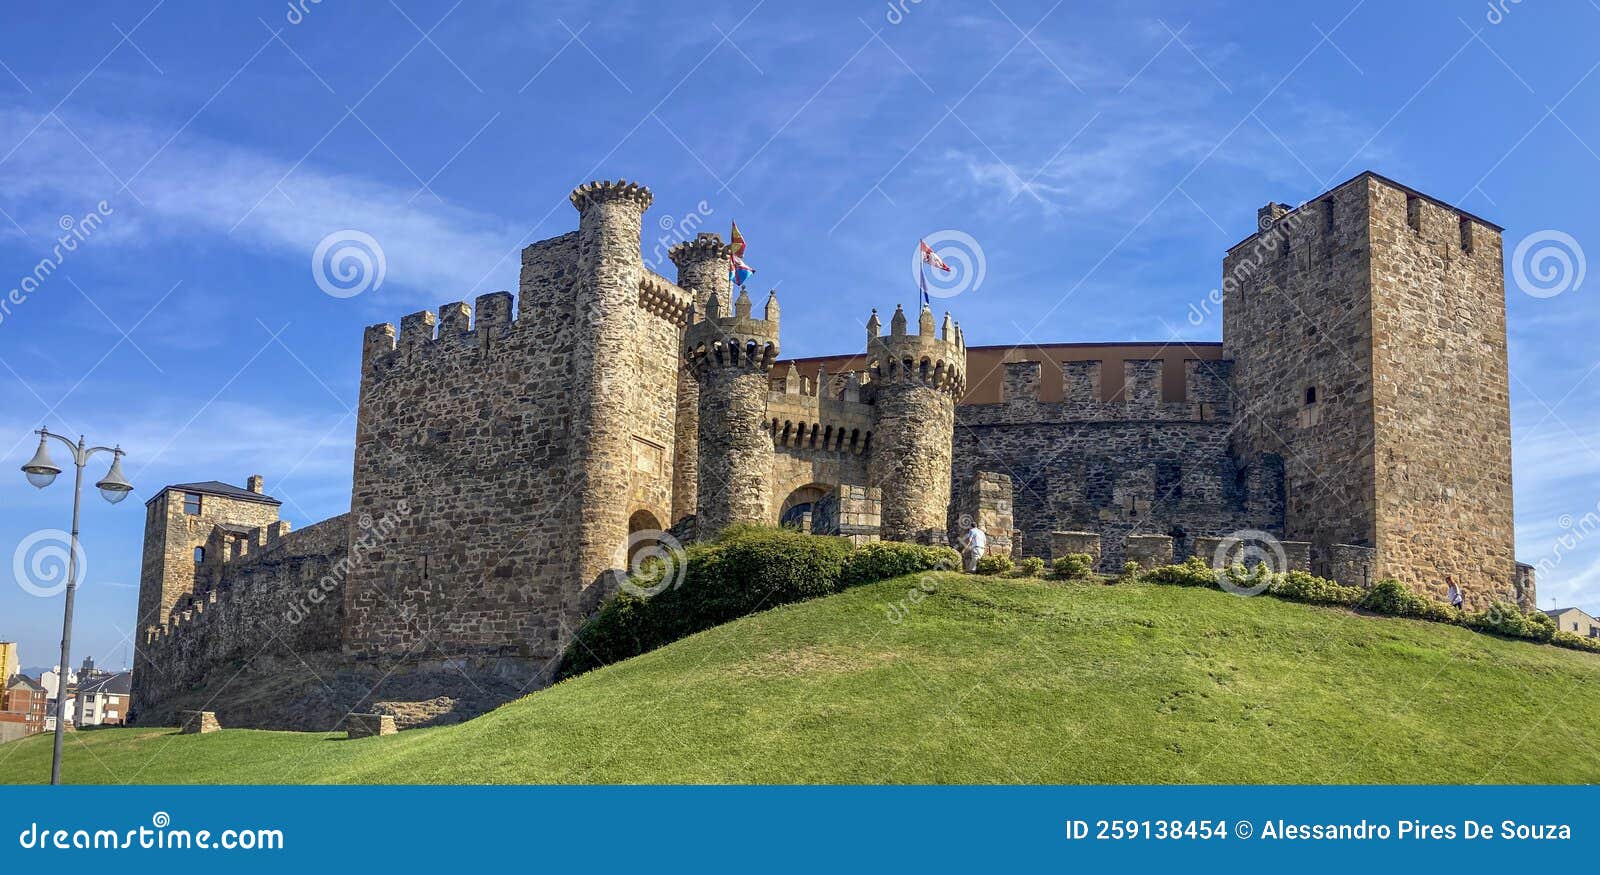 Le Château Des Chevaliers Templar De Ponferrada Une Ville Le Long Du Camino  De Santiago Espagne. Image stock éditorial - Image du horizontal, espagne:  259138454